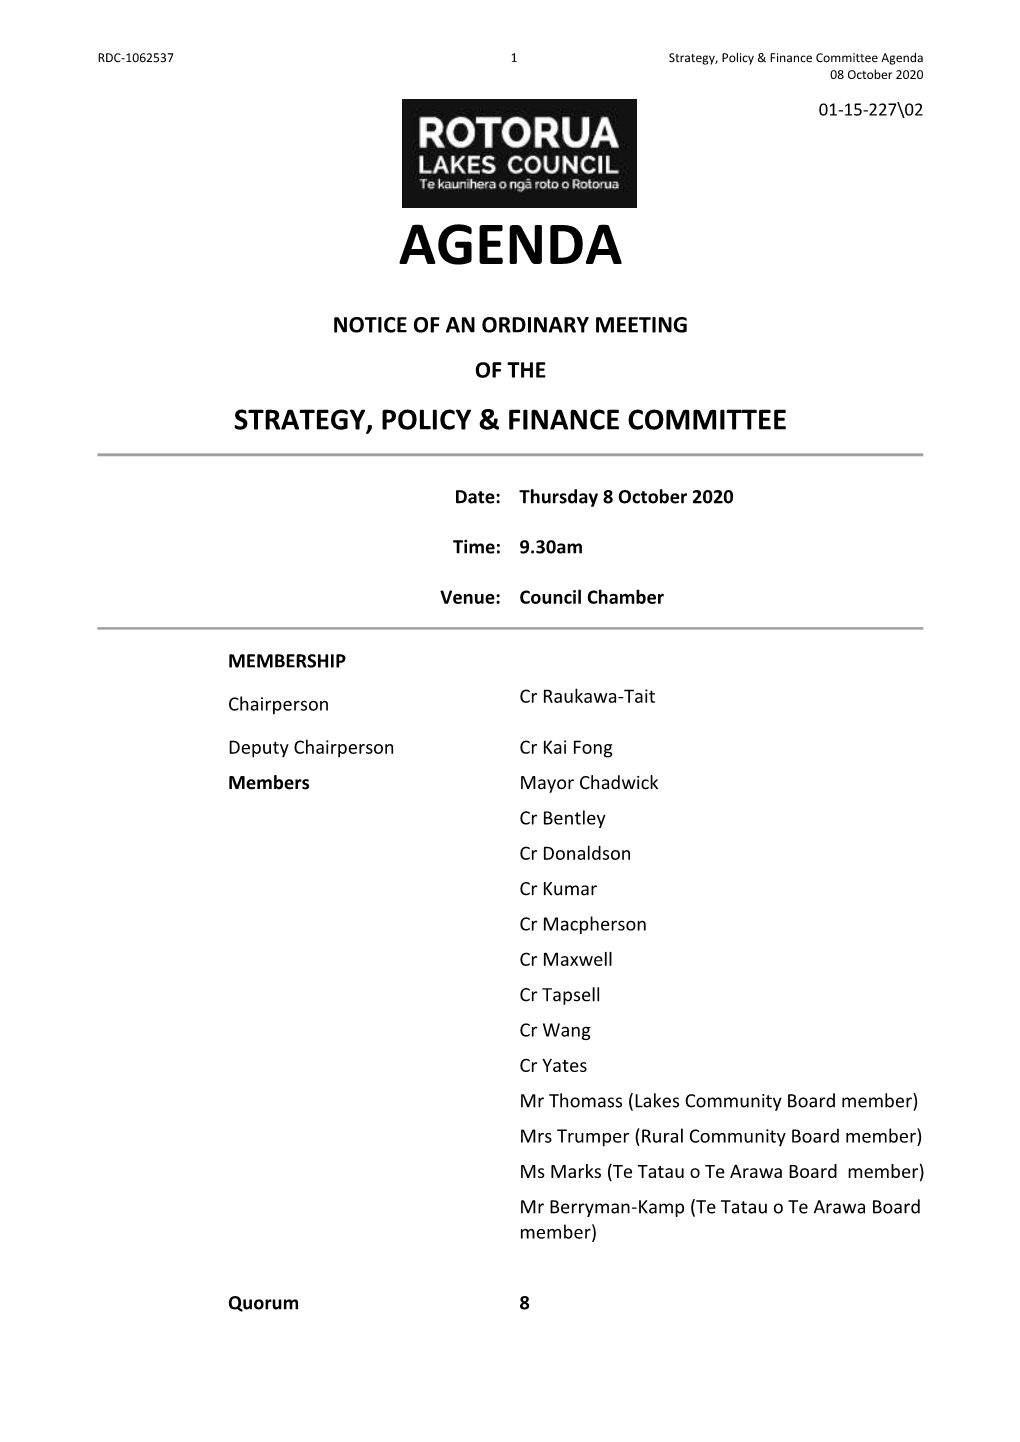 Agenda 08 October 2020